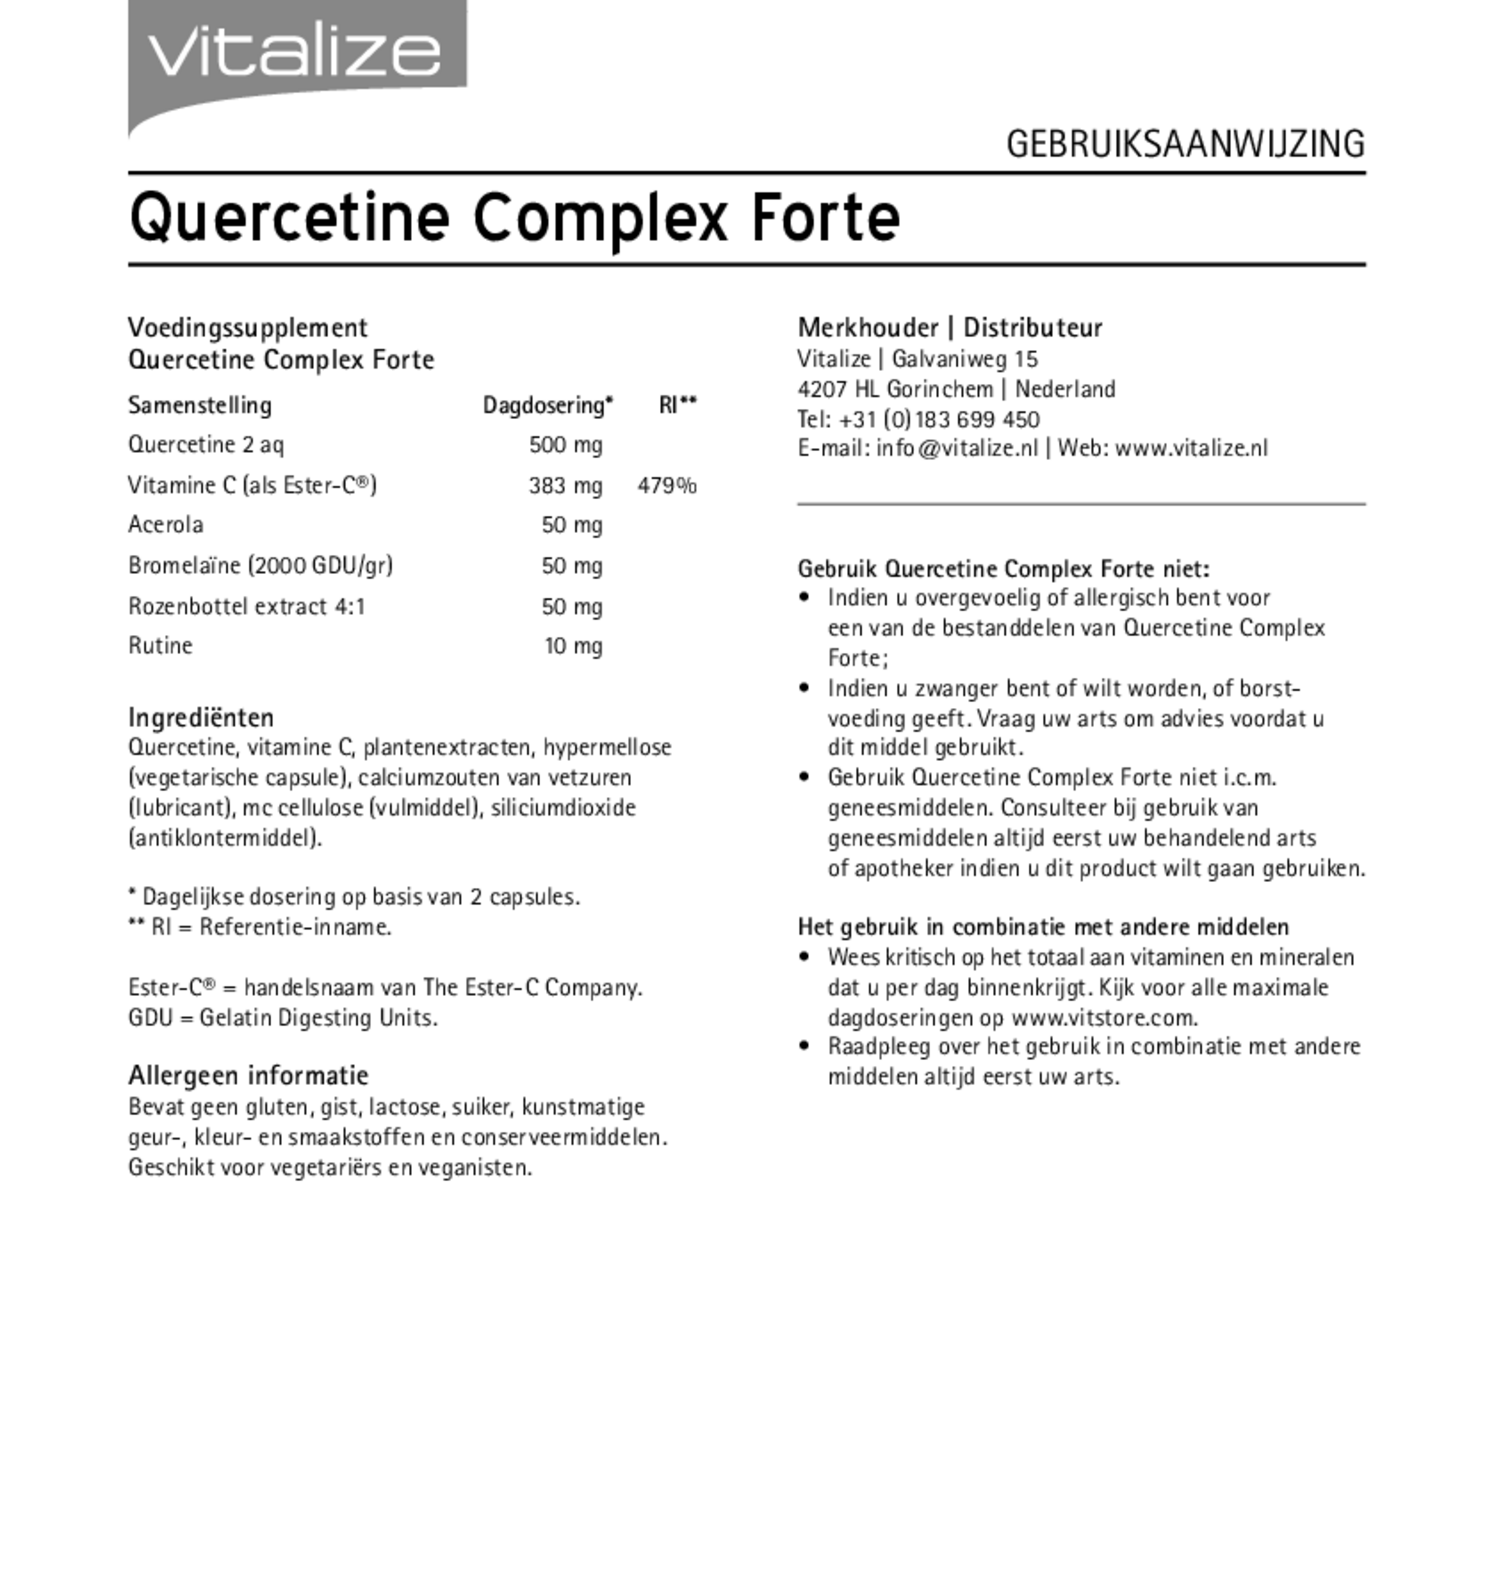 Quercetine Complex Forte Capsules afbeelding van document #1, gebruiksaanwijzing